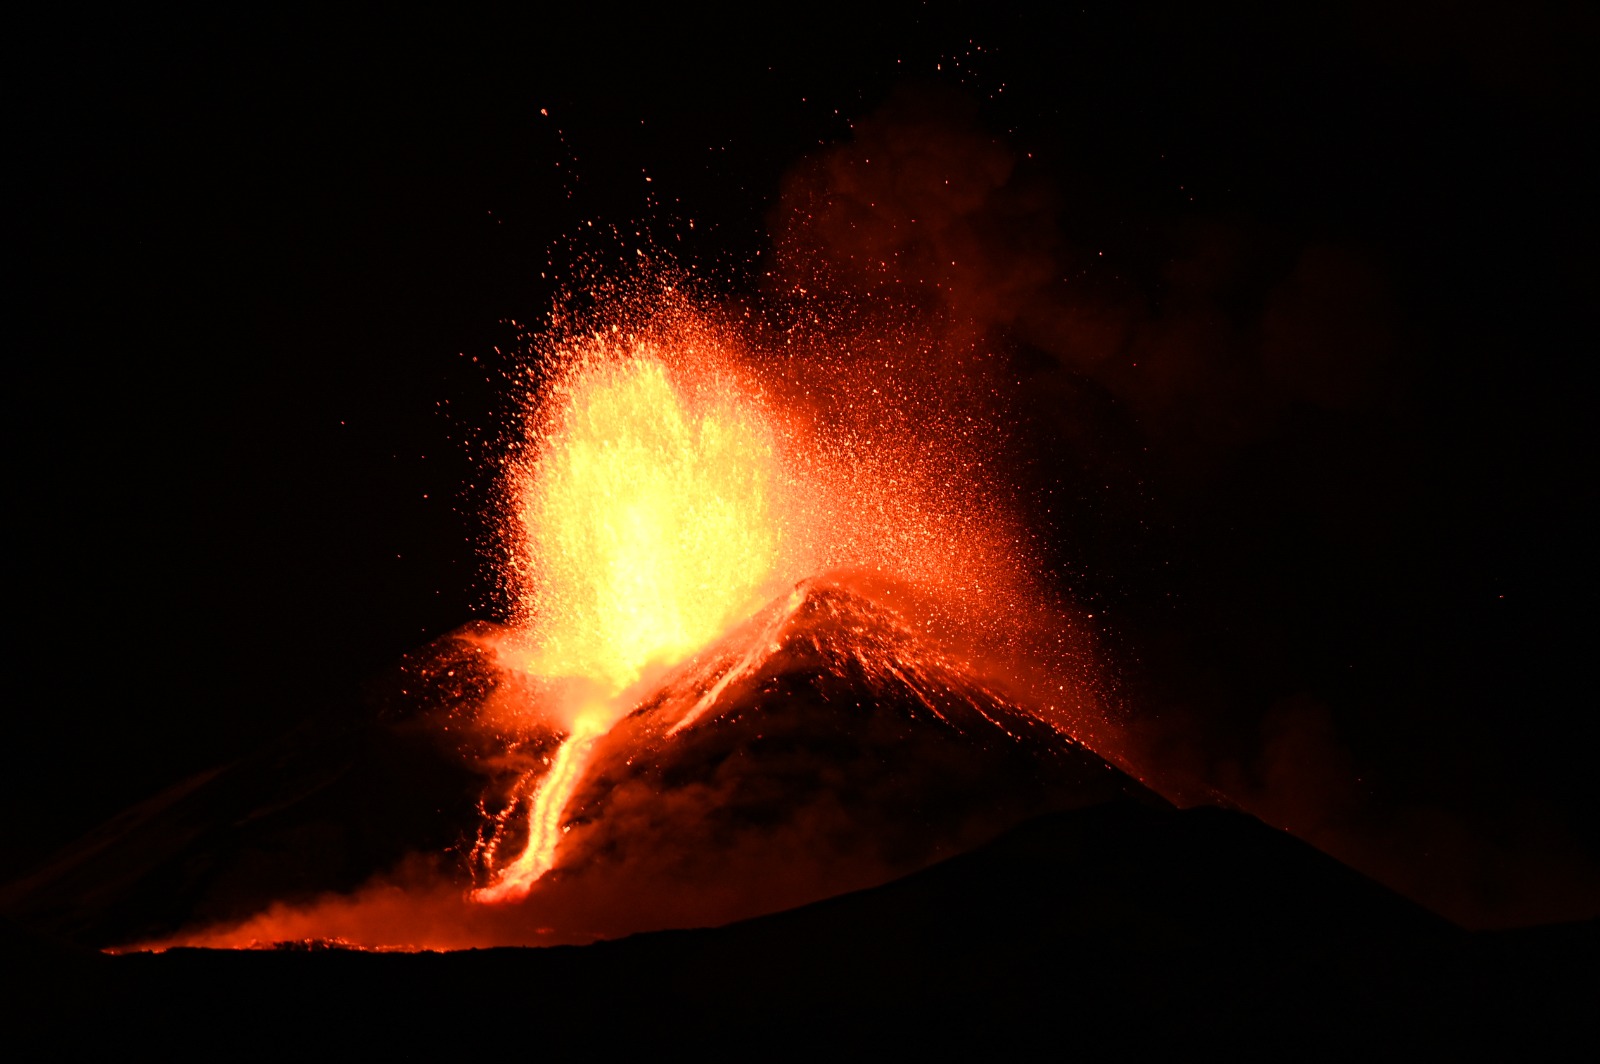 L’Etna in eruzione lascia tutti col fiato sospeso: le FOTO e i VIDEO più belli